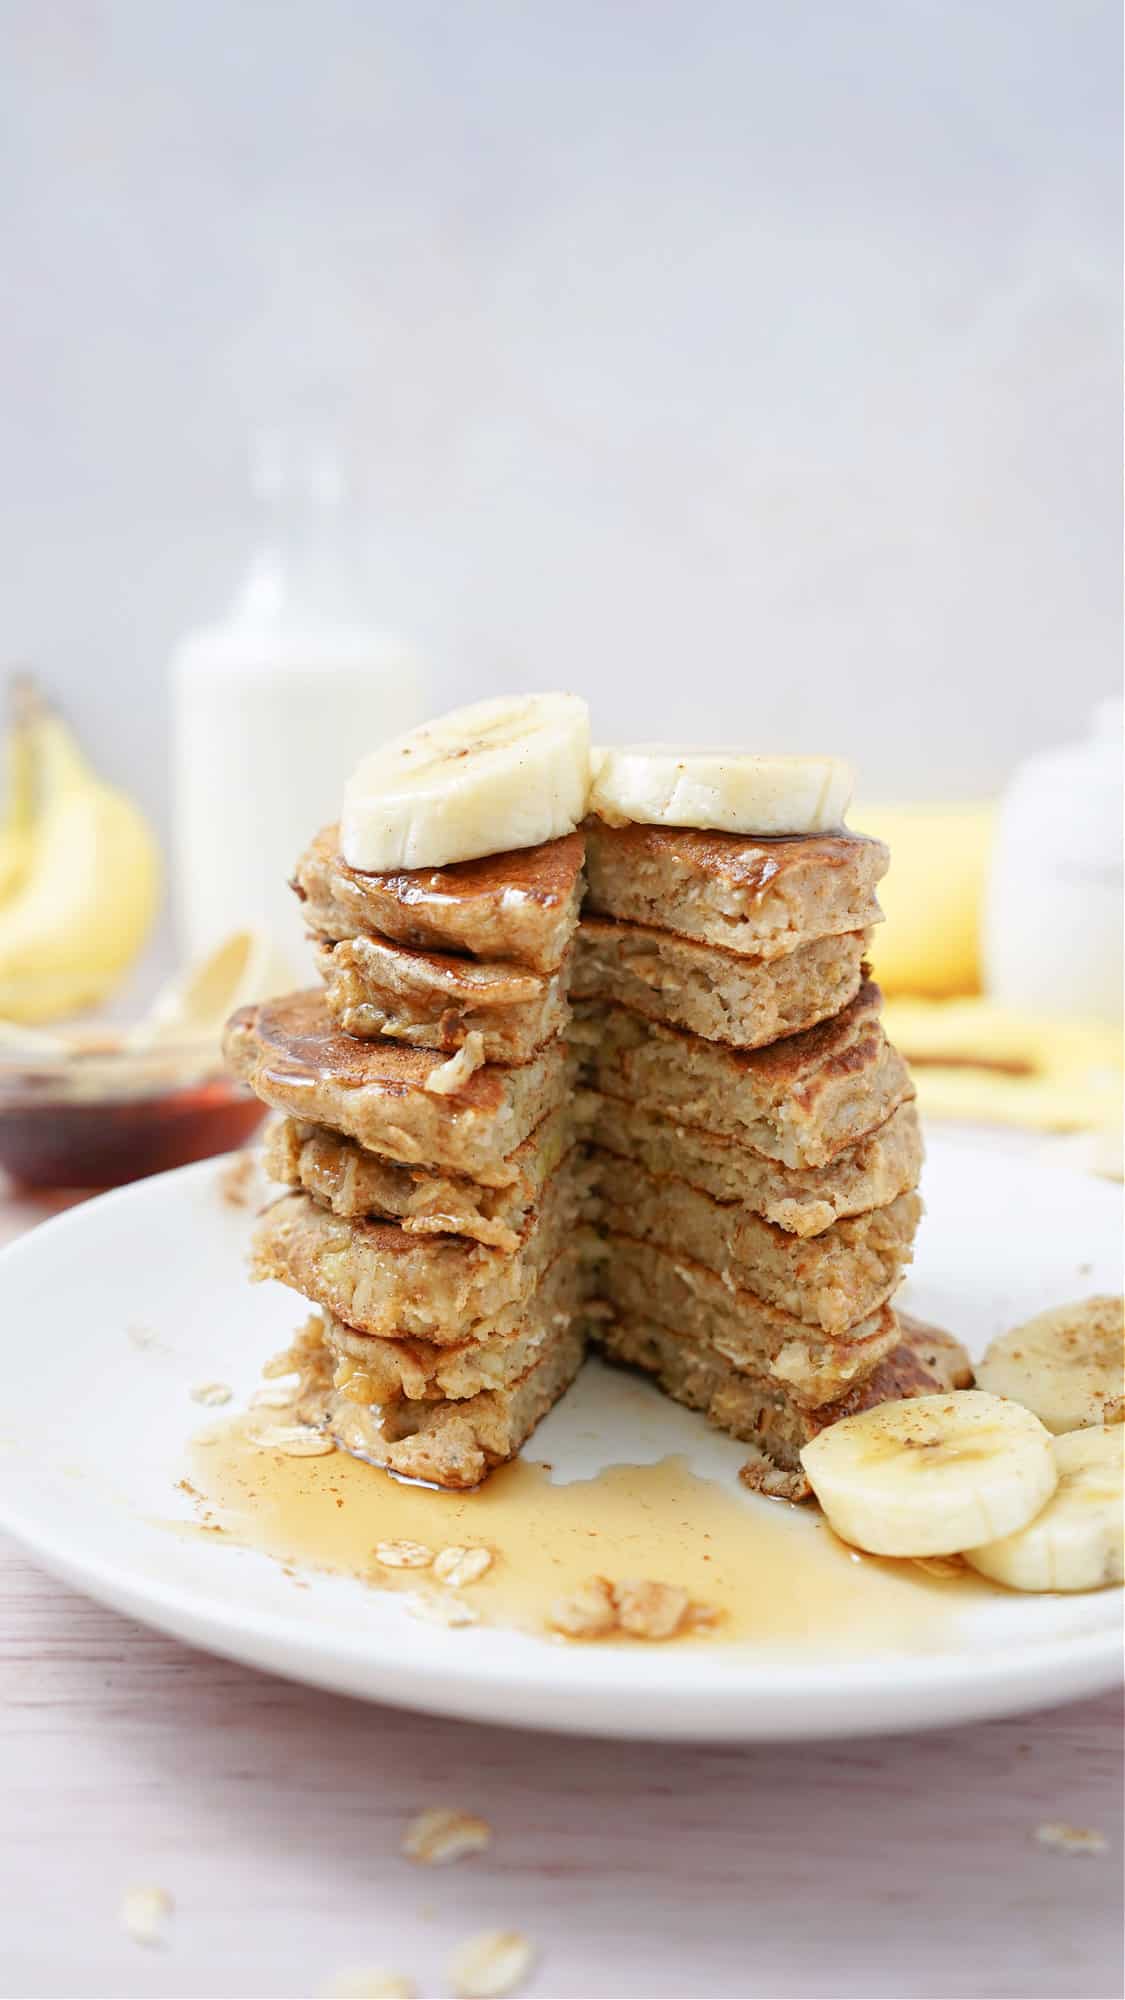 How to make Banana Oatmeal Pancakes